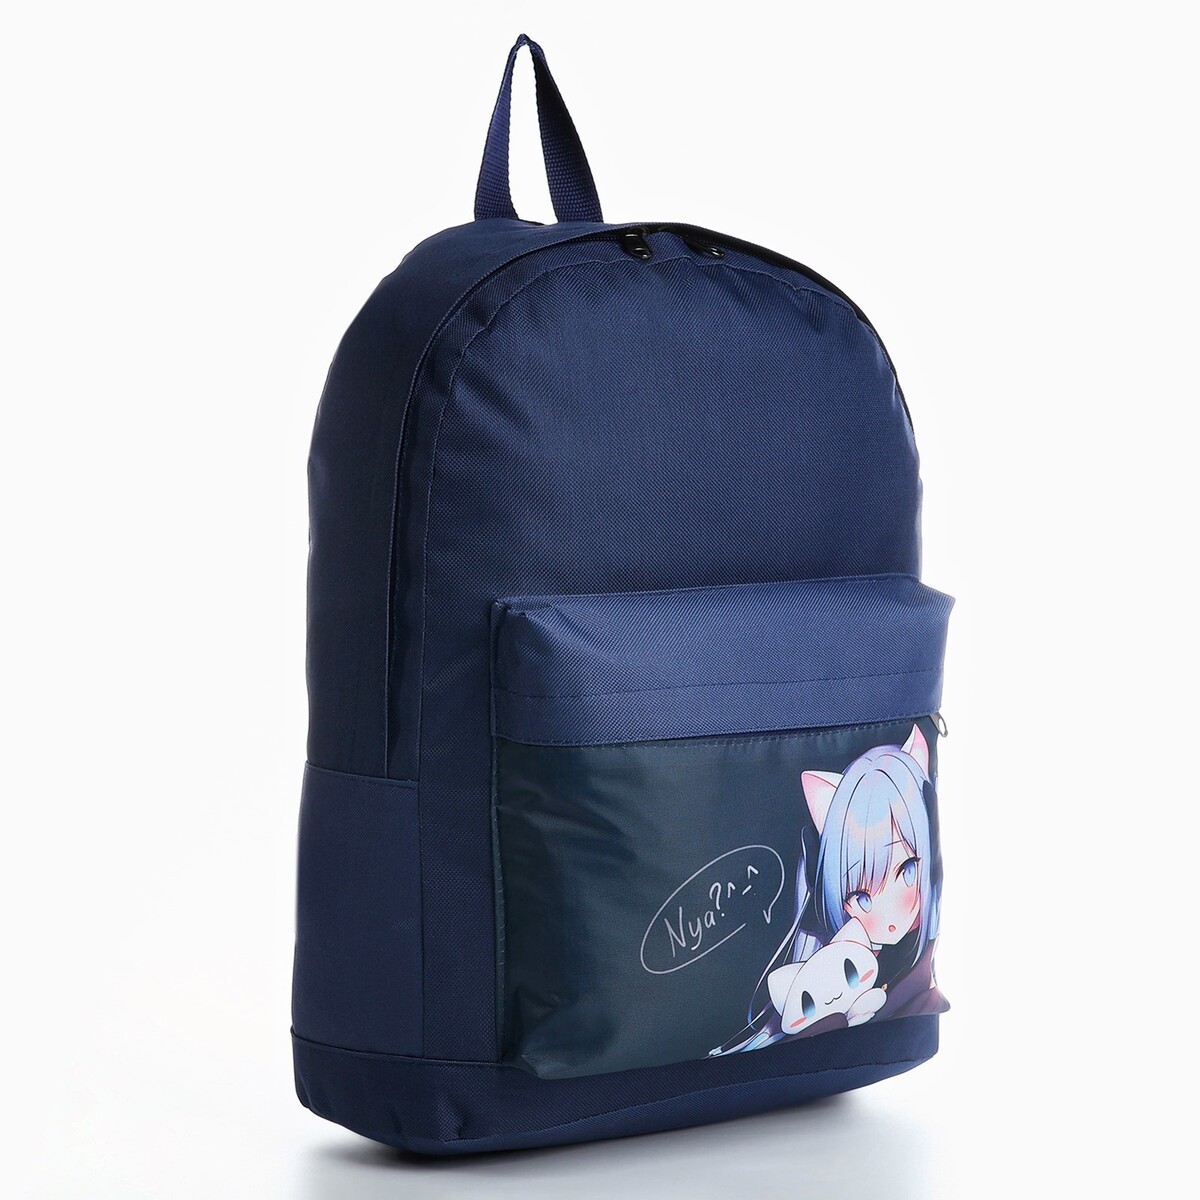 Рюкзак детский аниме, 33*13*37, отд на молнии, н/карман, темно-синий рюкзак аниме с тачкой 40 27 12см 1отд